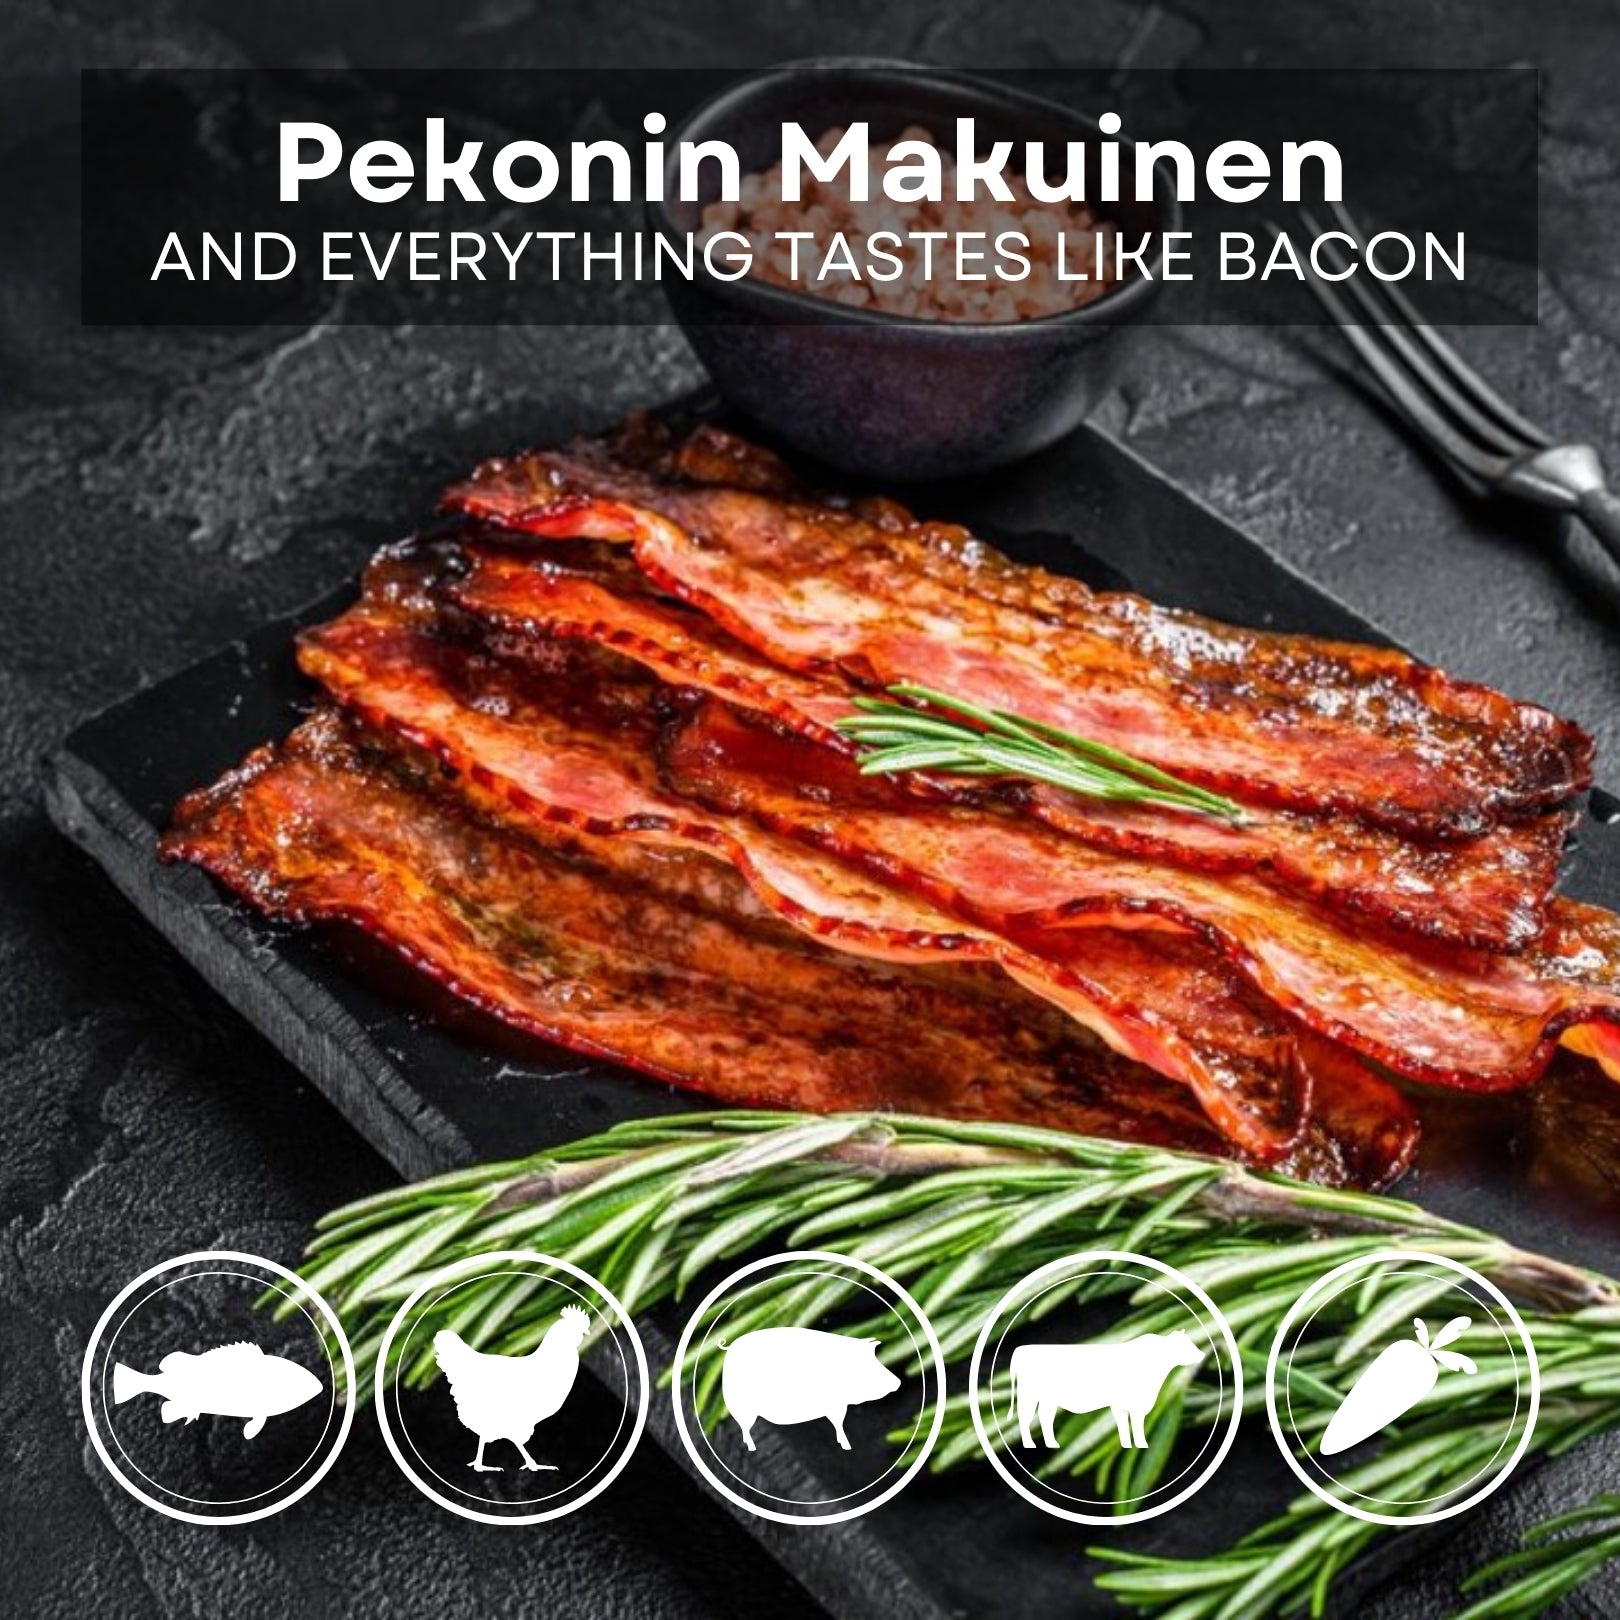 Pekonin Makuinen seasoning species for chicken, fish, vegetables, pork